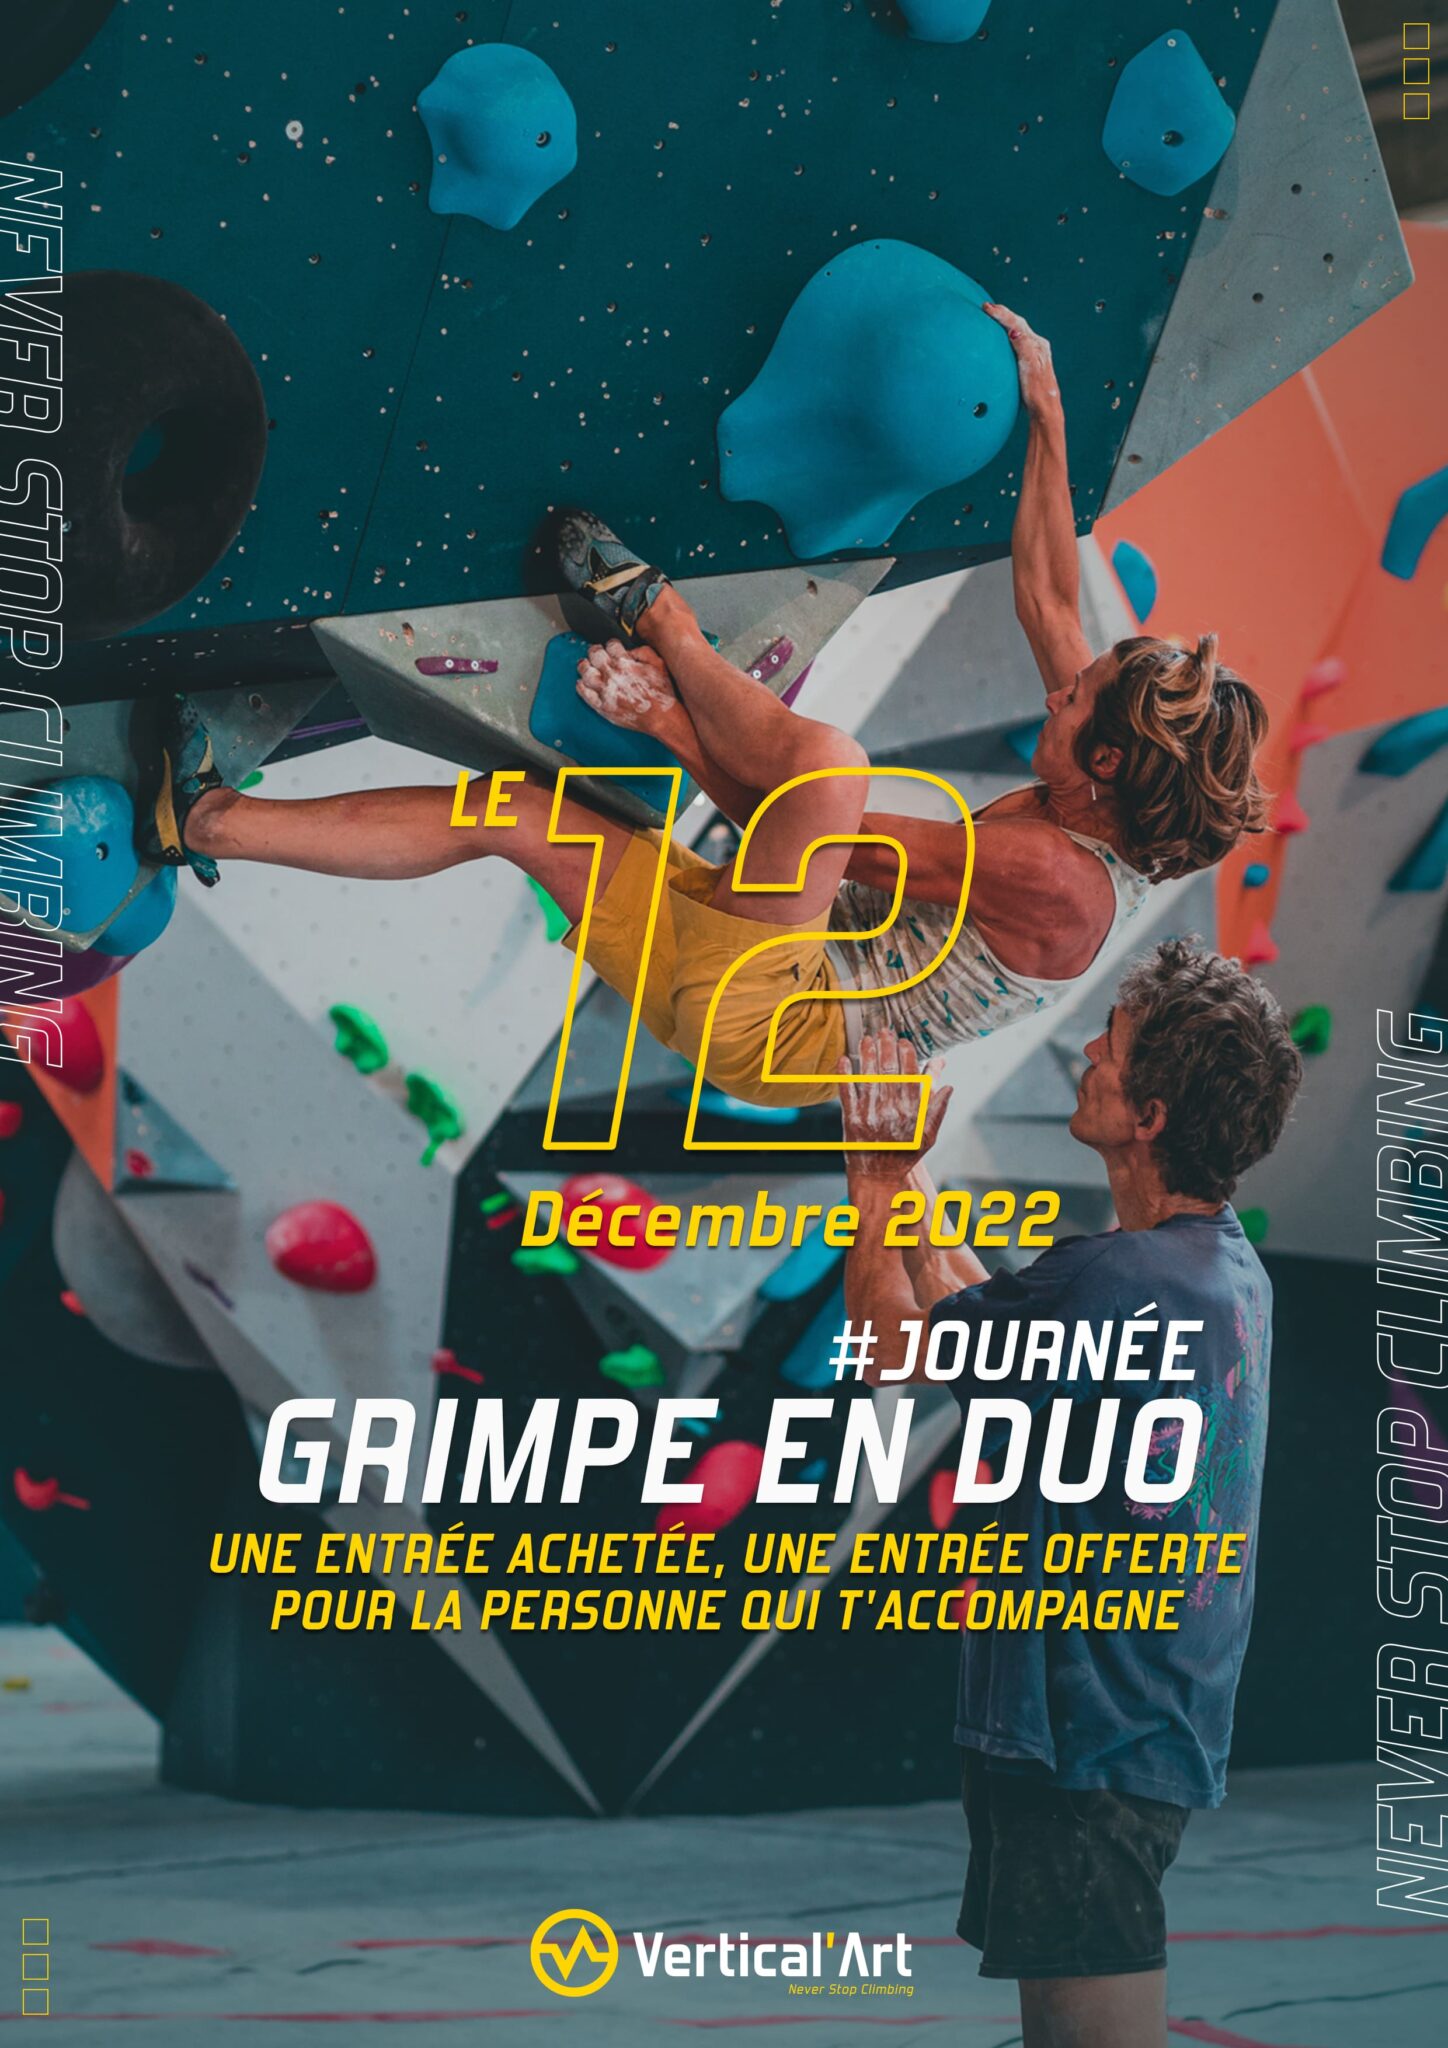 Grimpe en duo Vertical'Art Lille 12 décembre 2022 une entrée achetée, une offerte